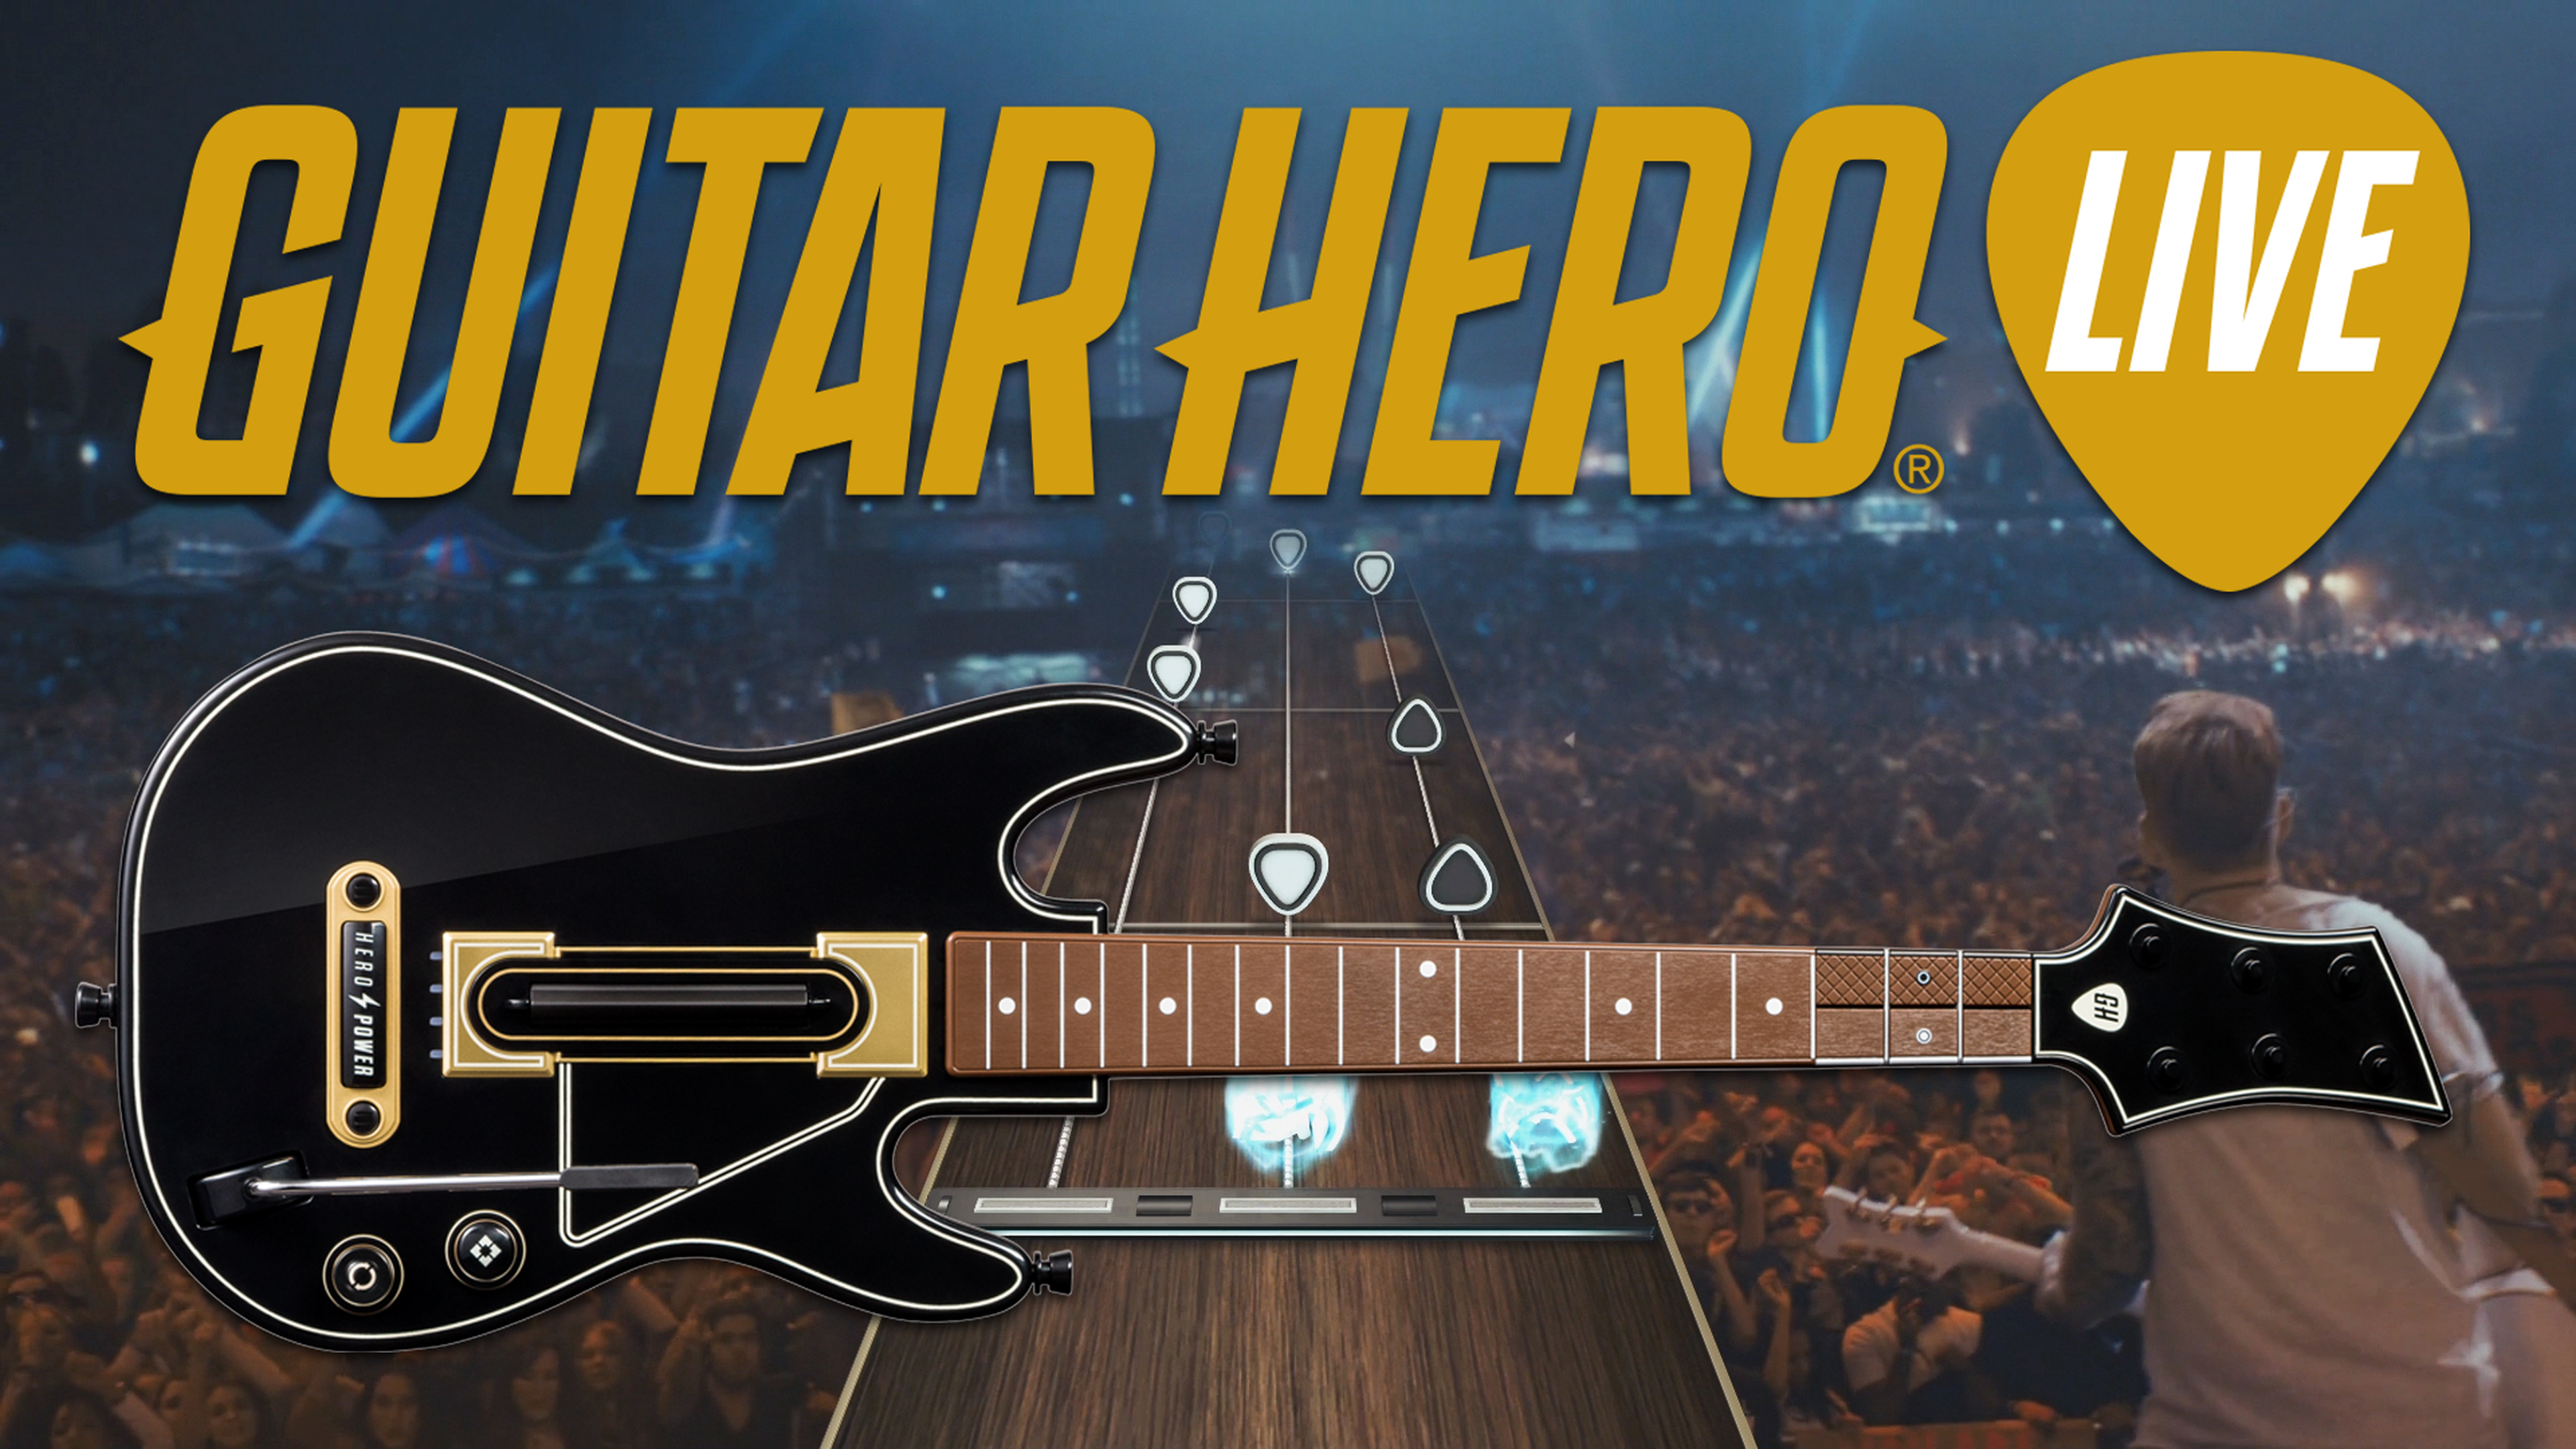 Guitar Hero 5 ya tiene diseño para su batería